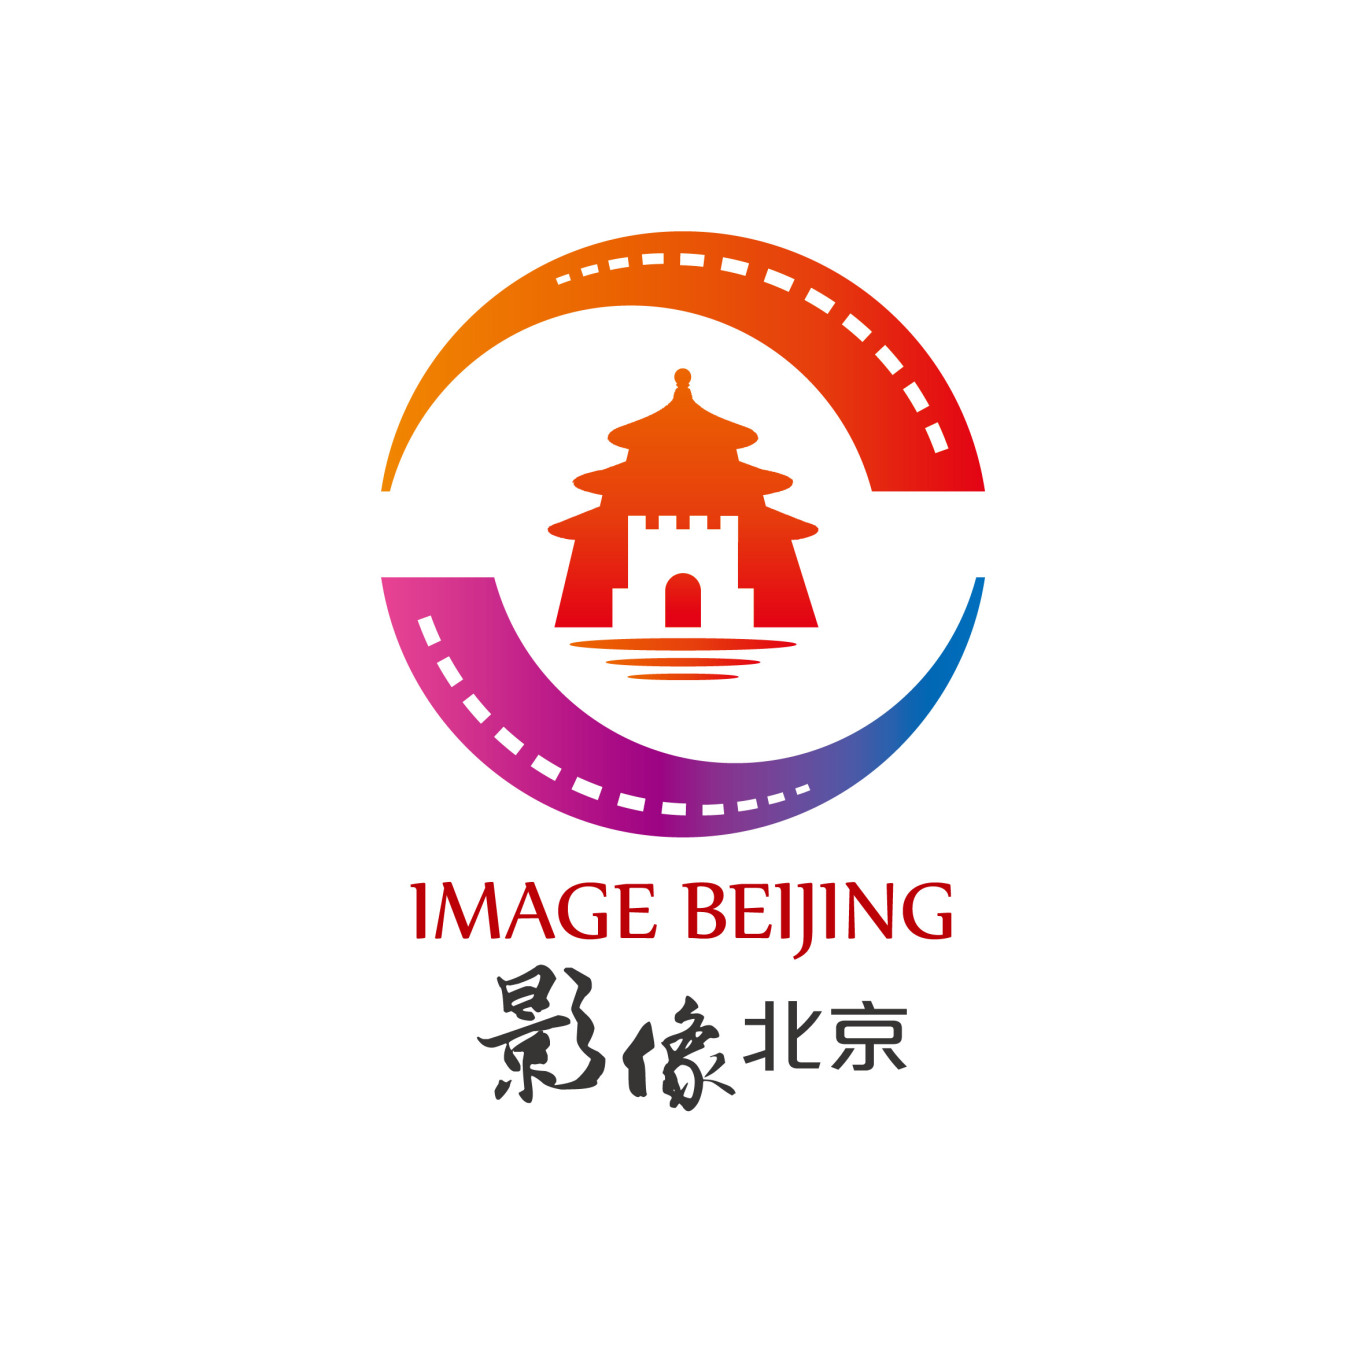 影像北京图0